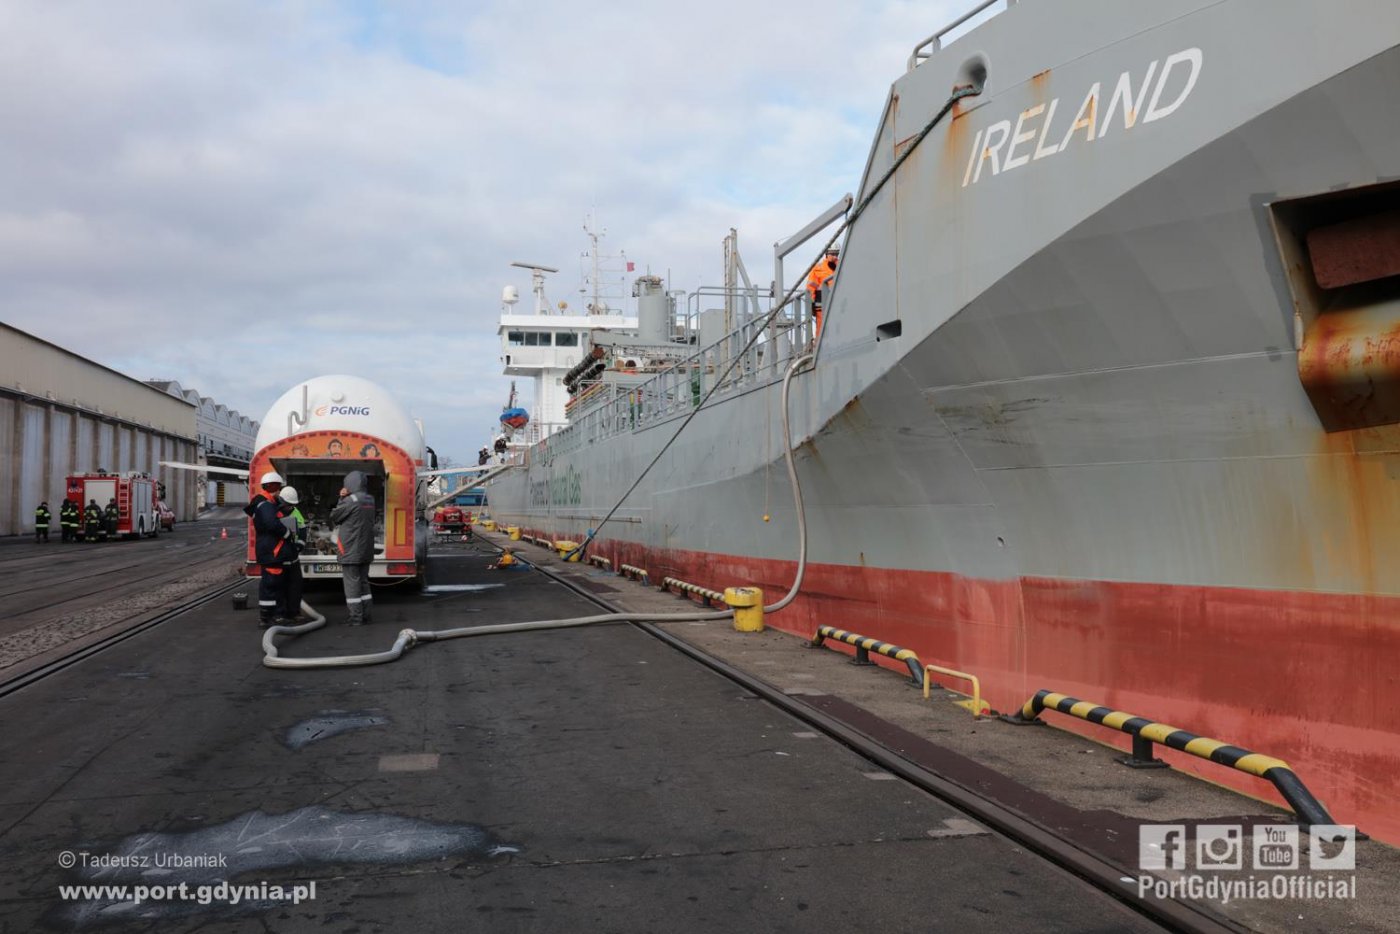 Pierwsze bunkrowanie LNG w gdyńskim porcie - statek „Ireland”, fot. Tadeusz Urbaniak / www.port.gdynia.pl